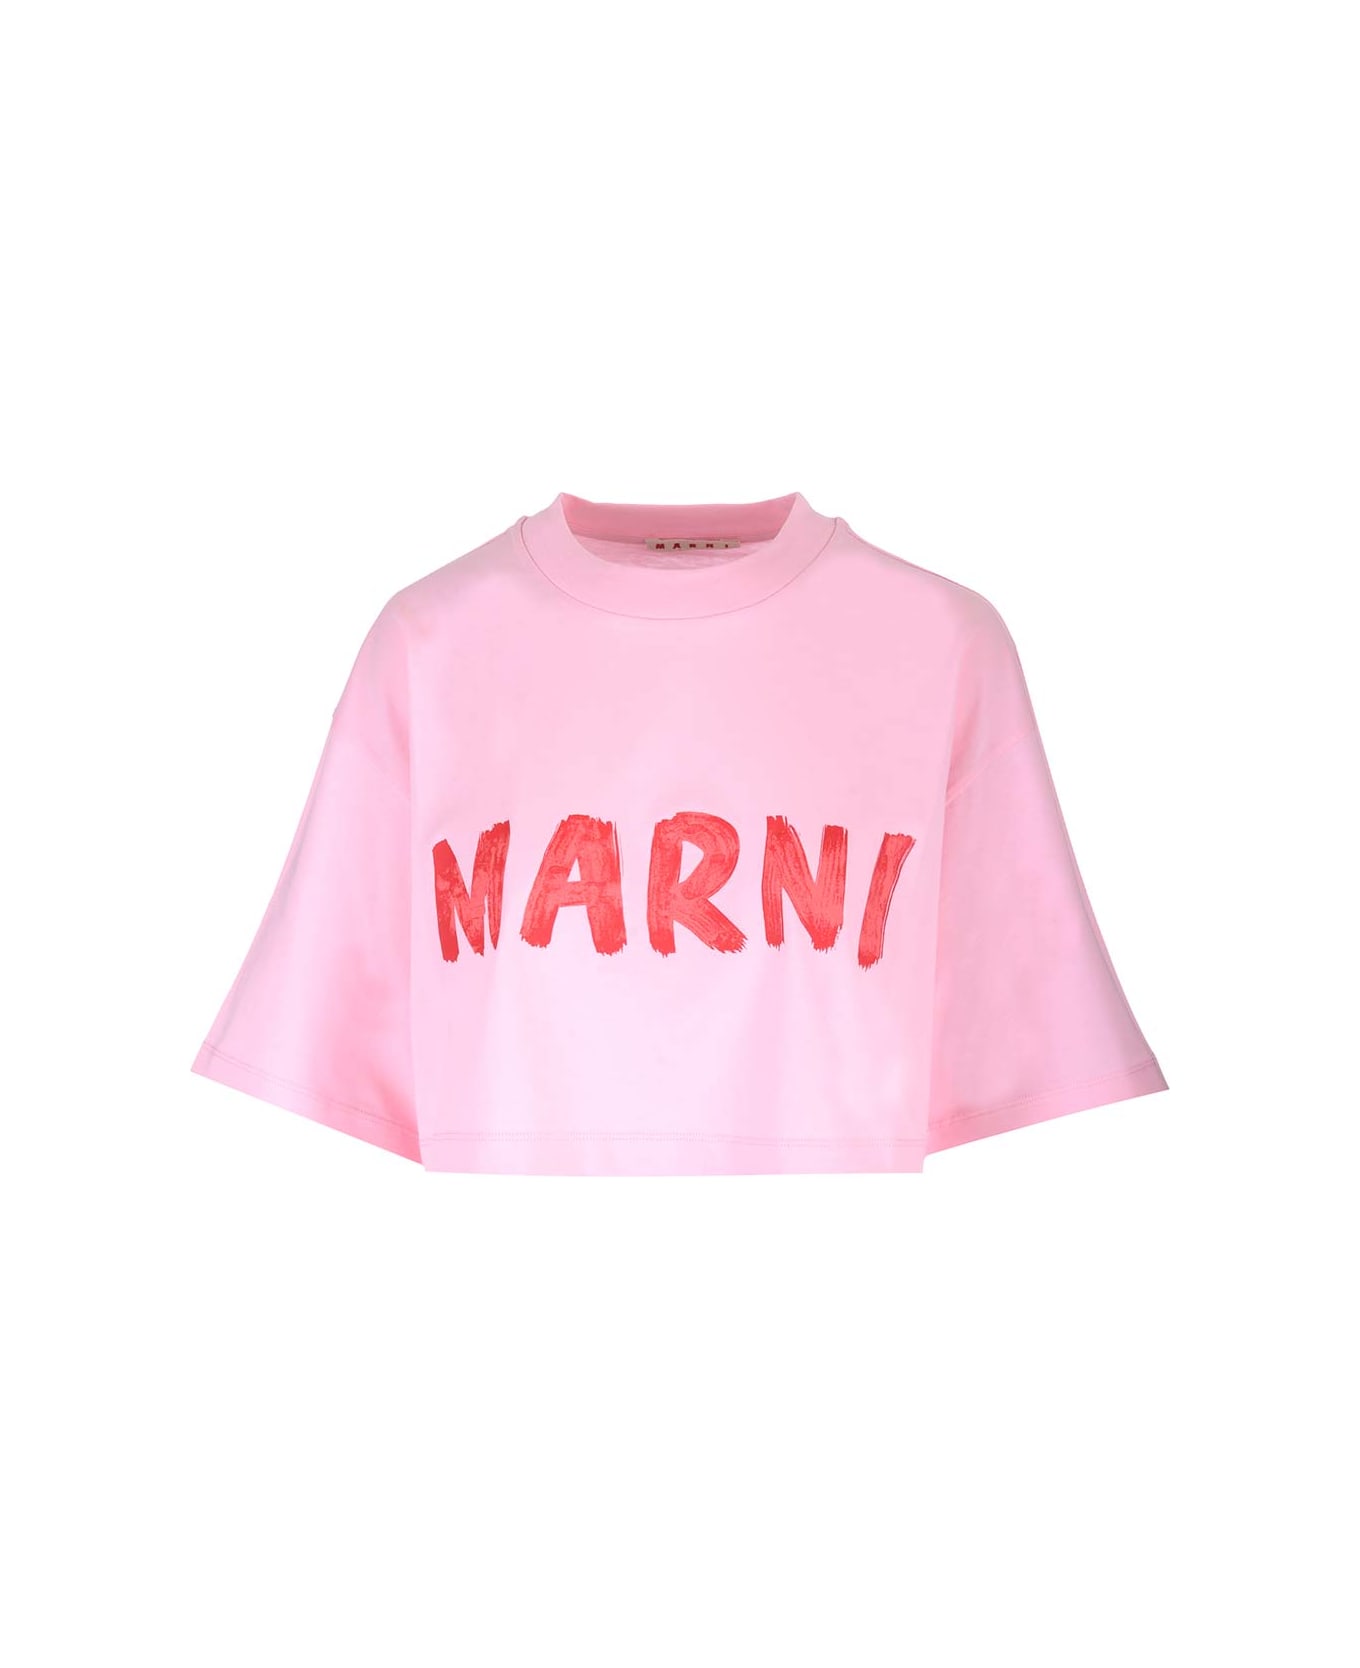 Marni Cropped T-shirt - Rosa トップス